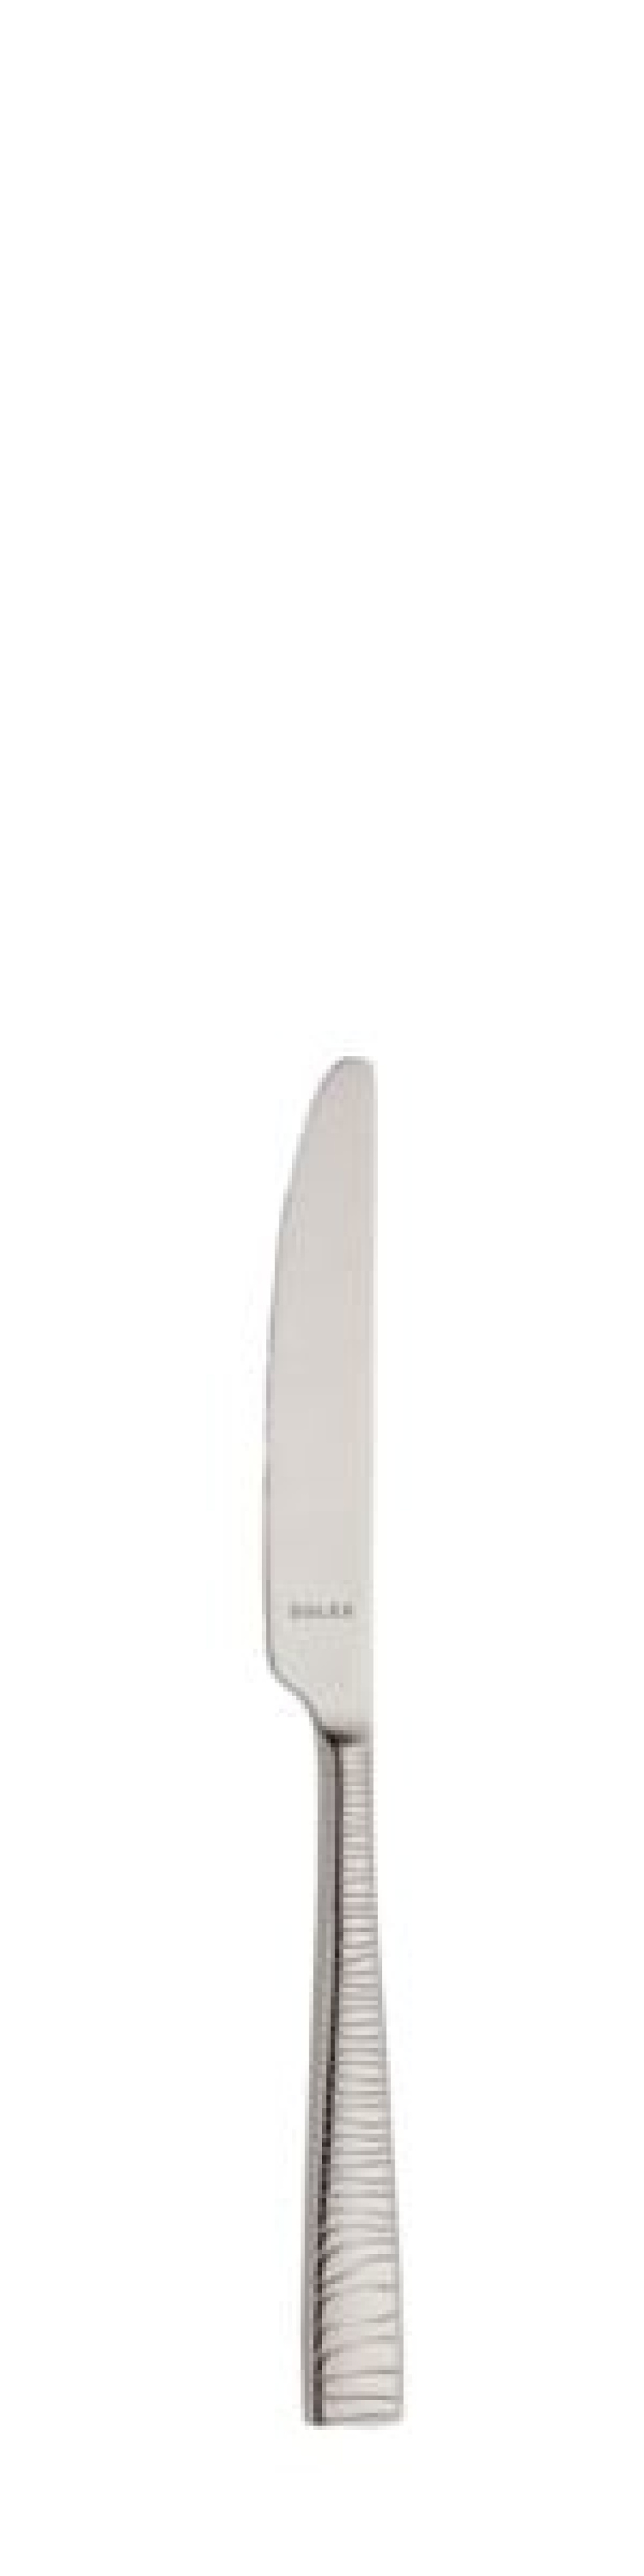 Alexa Smörkniv 170 mm - Solex i gruppen Dukning / Bestick / Smörknivar hos KitchenLab (1284-21677)